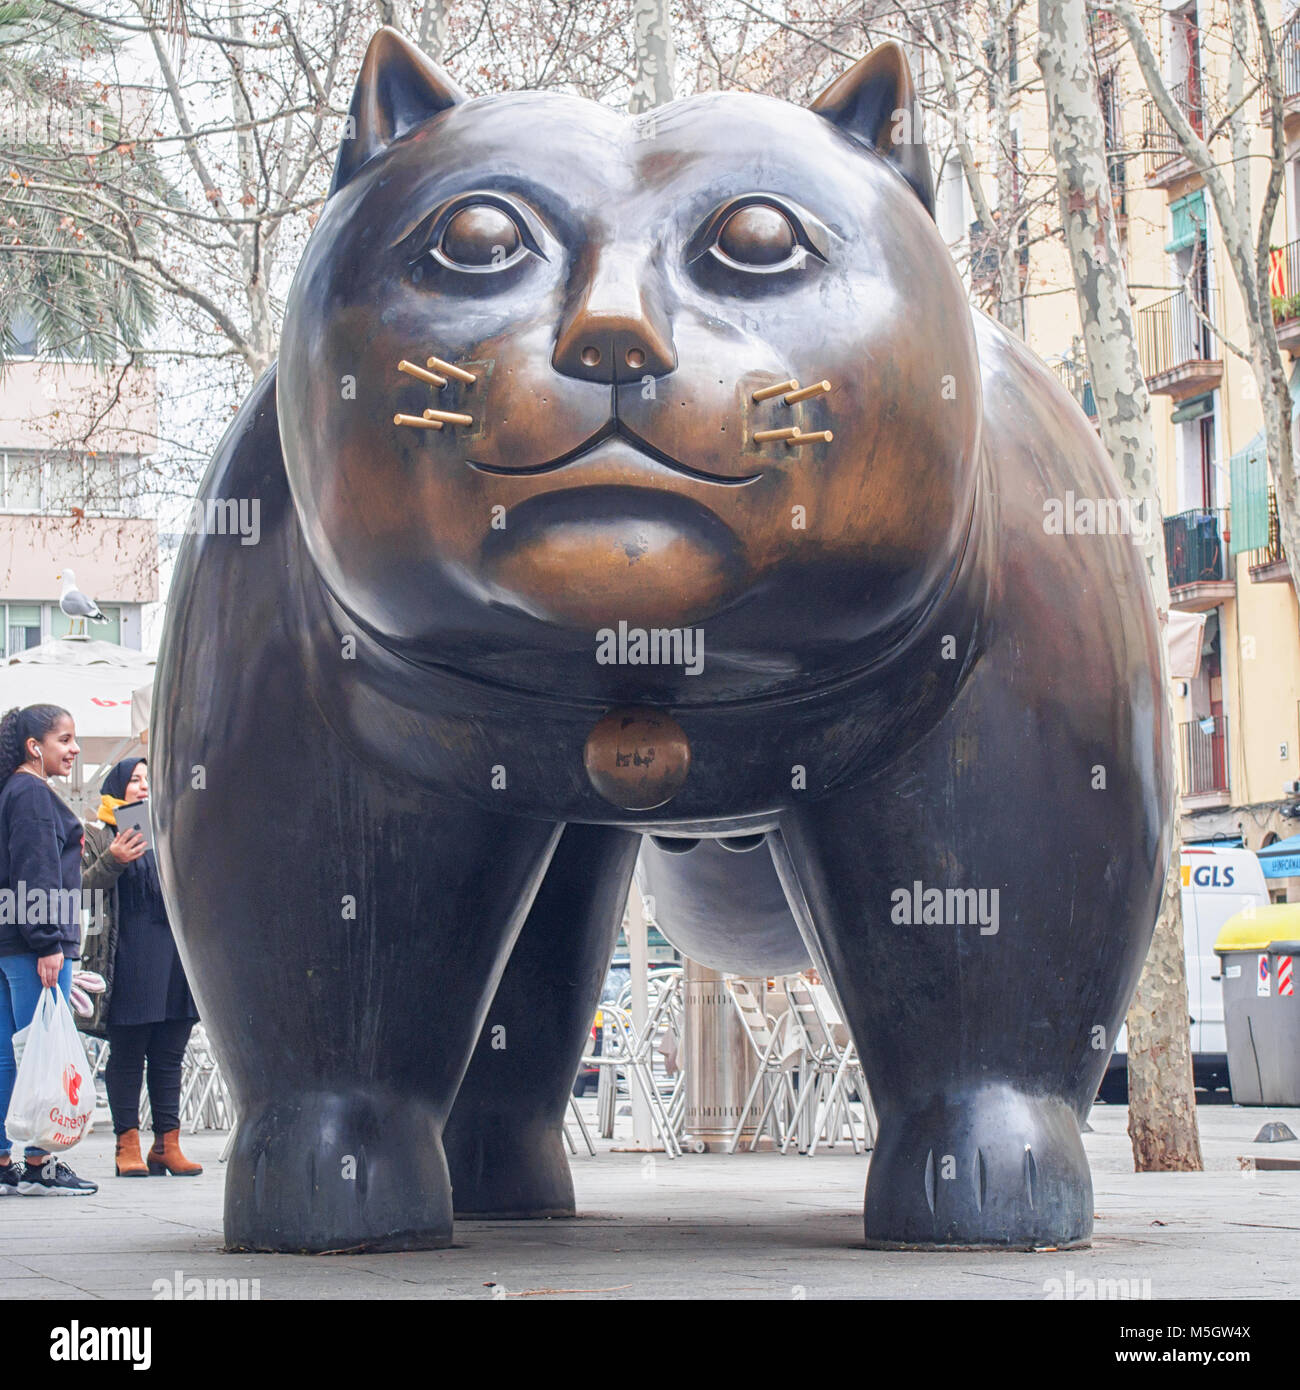 Barcelone, Espagne-17 février, 2018 - Sculpture de Fernando Botero 'El Gato' ('Le Chat') dans le quartier du Raval Banque D'Images